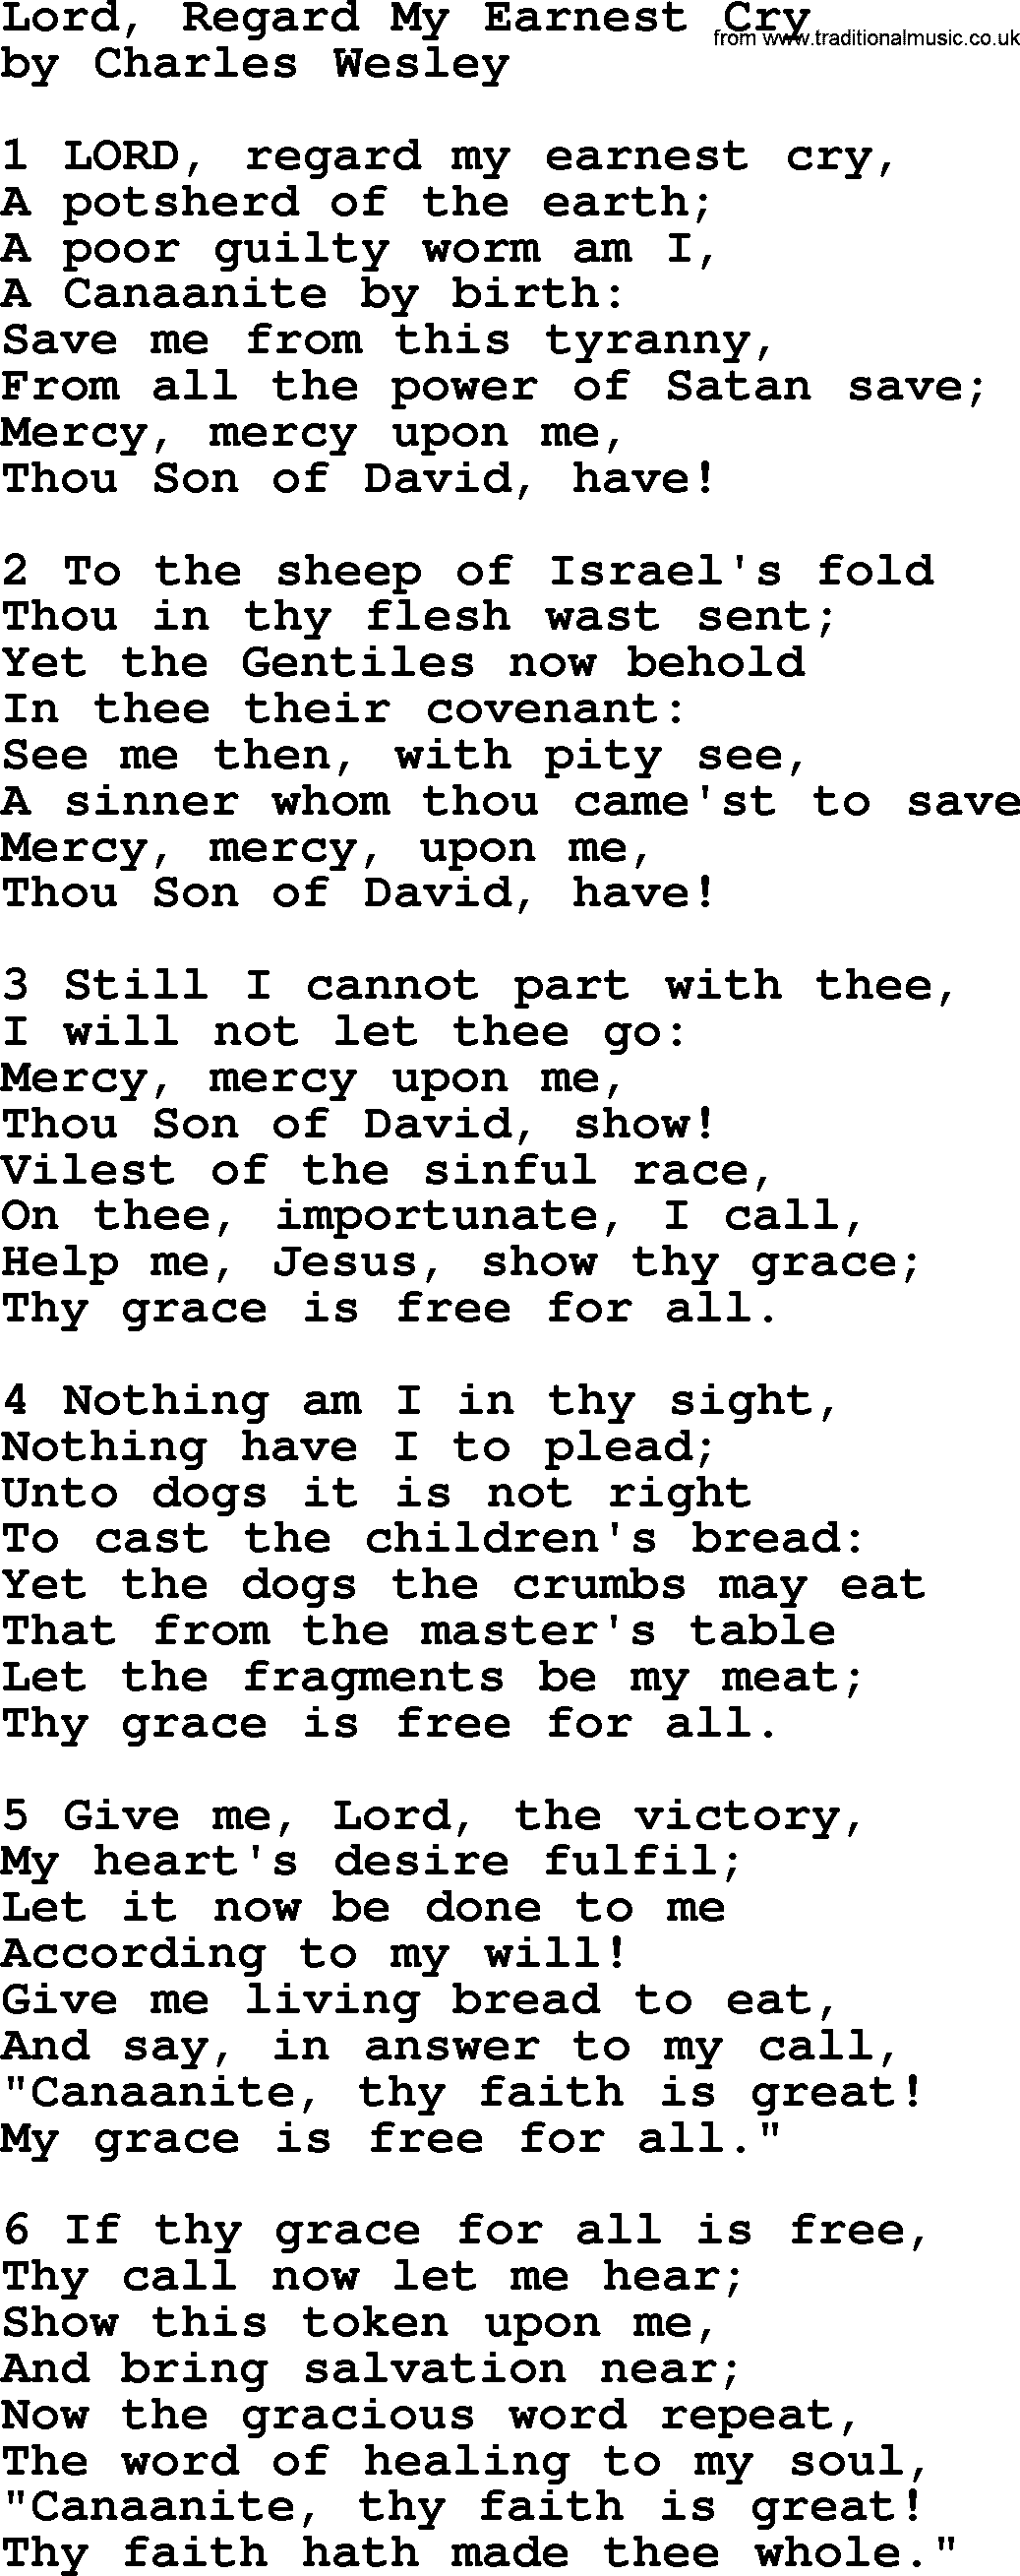 Charles Wesley hymn: Lord, Regard My Earnest Cry, lyrics